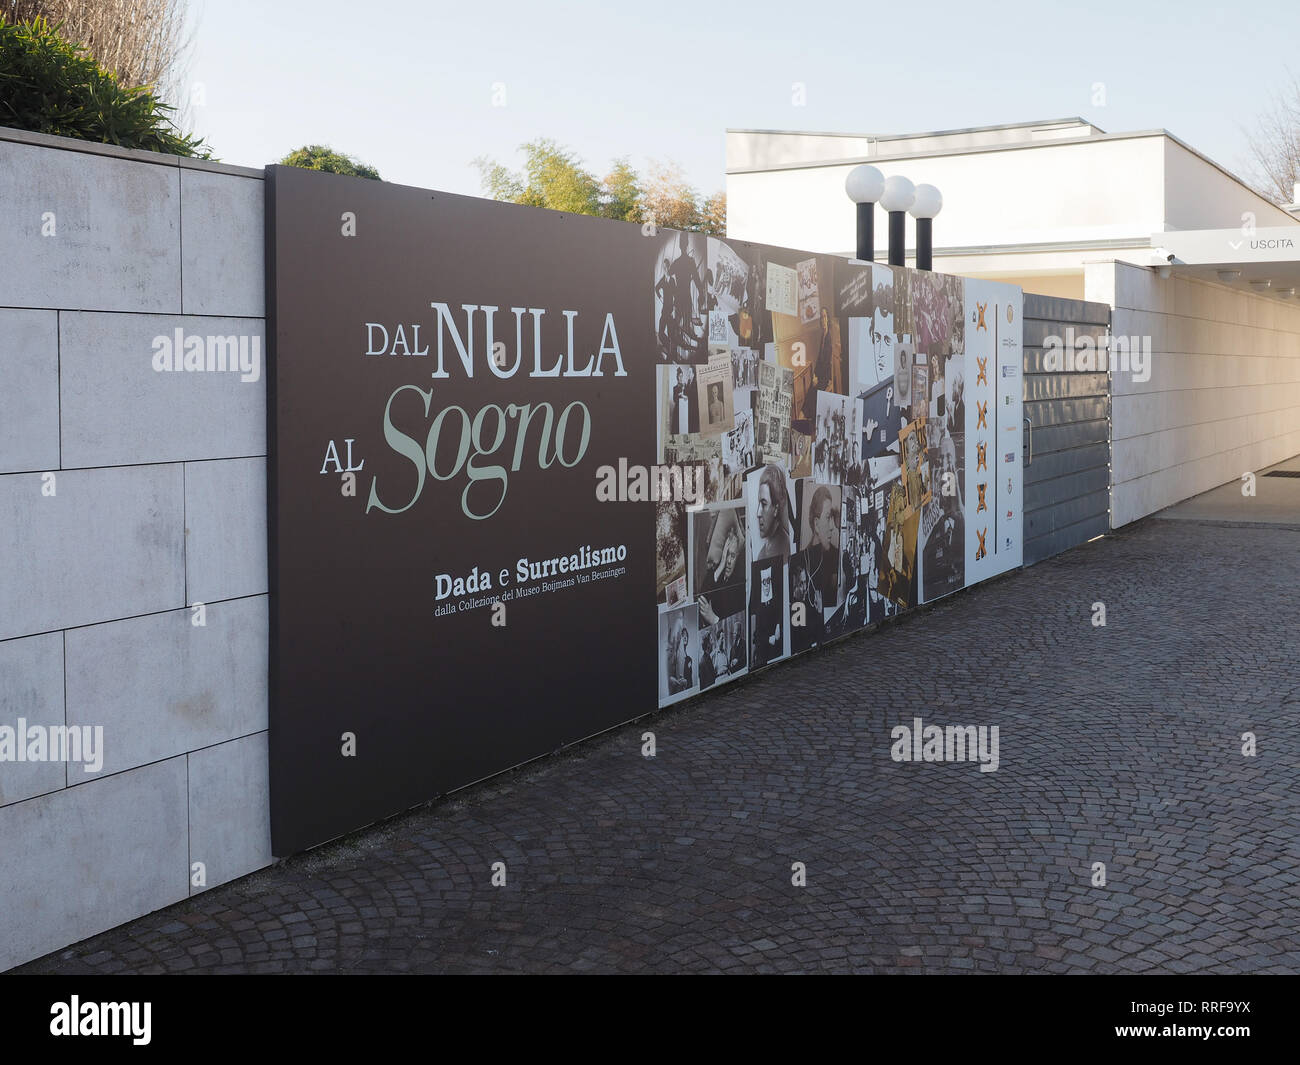 ALBA, ITALIE - circa 2019 Février : Dal Nulla al Sogno (sens de rien de rêver) Dada et le surréalisme à l'exposition Galerie d'art Fondazione Ferrero Banque D'Images